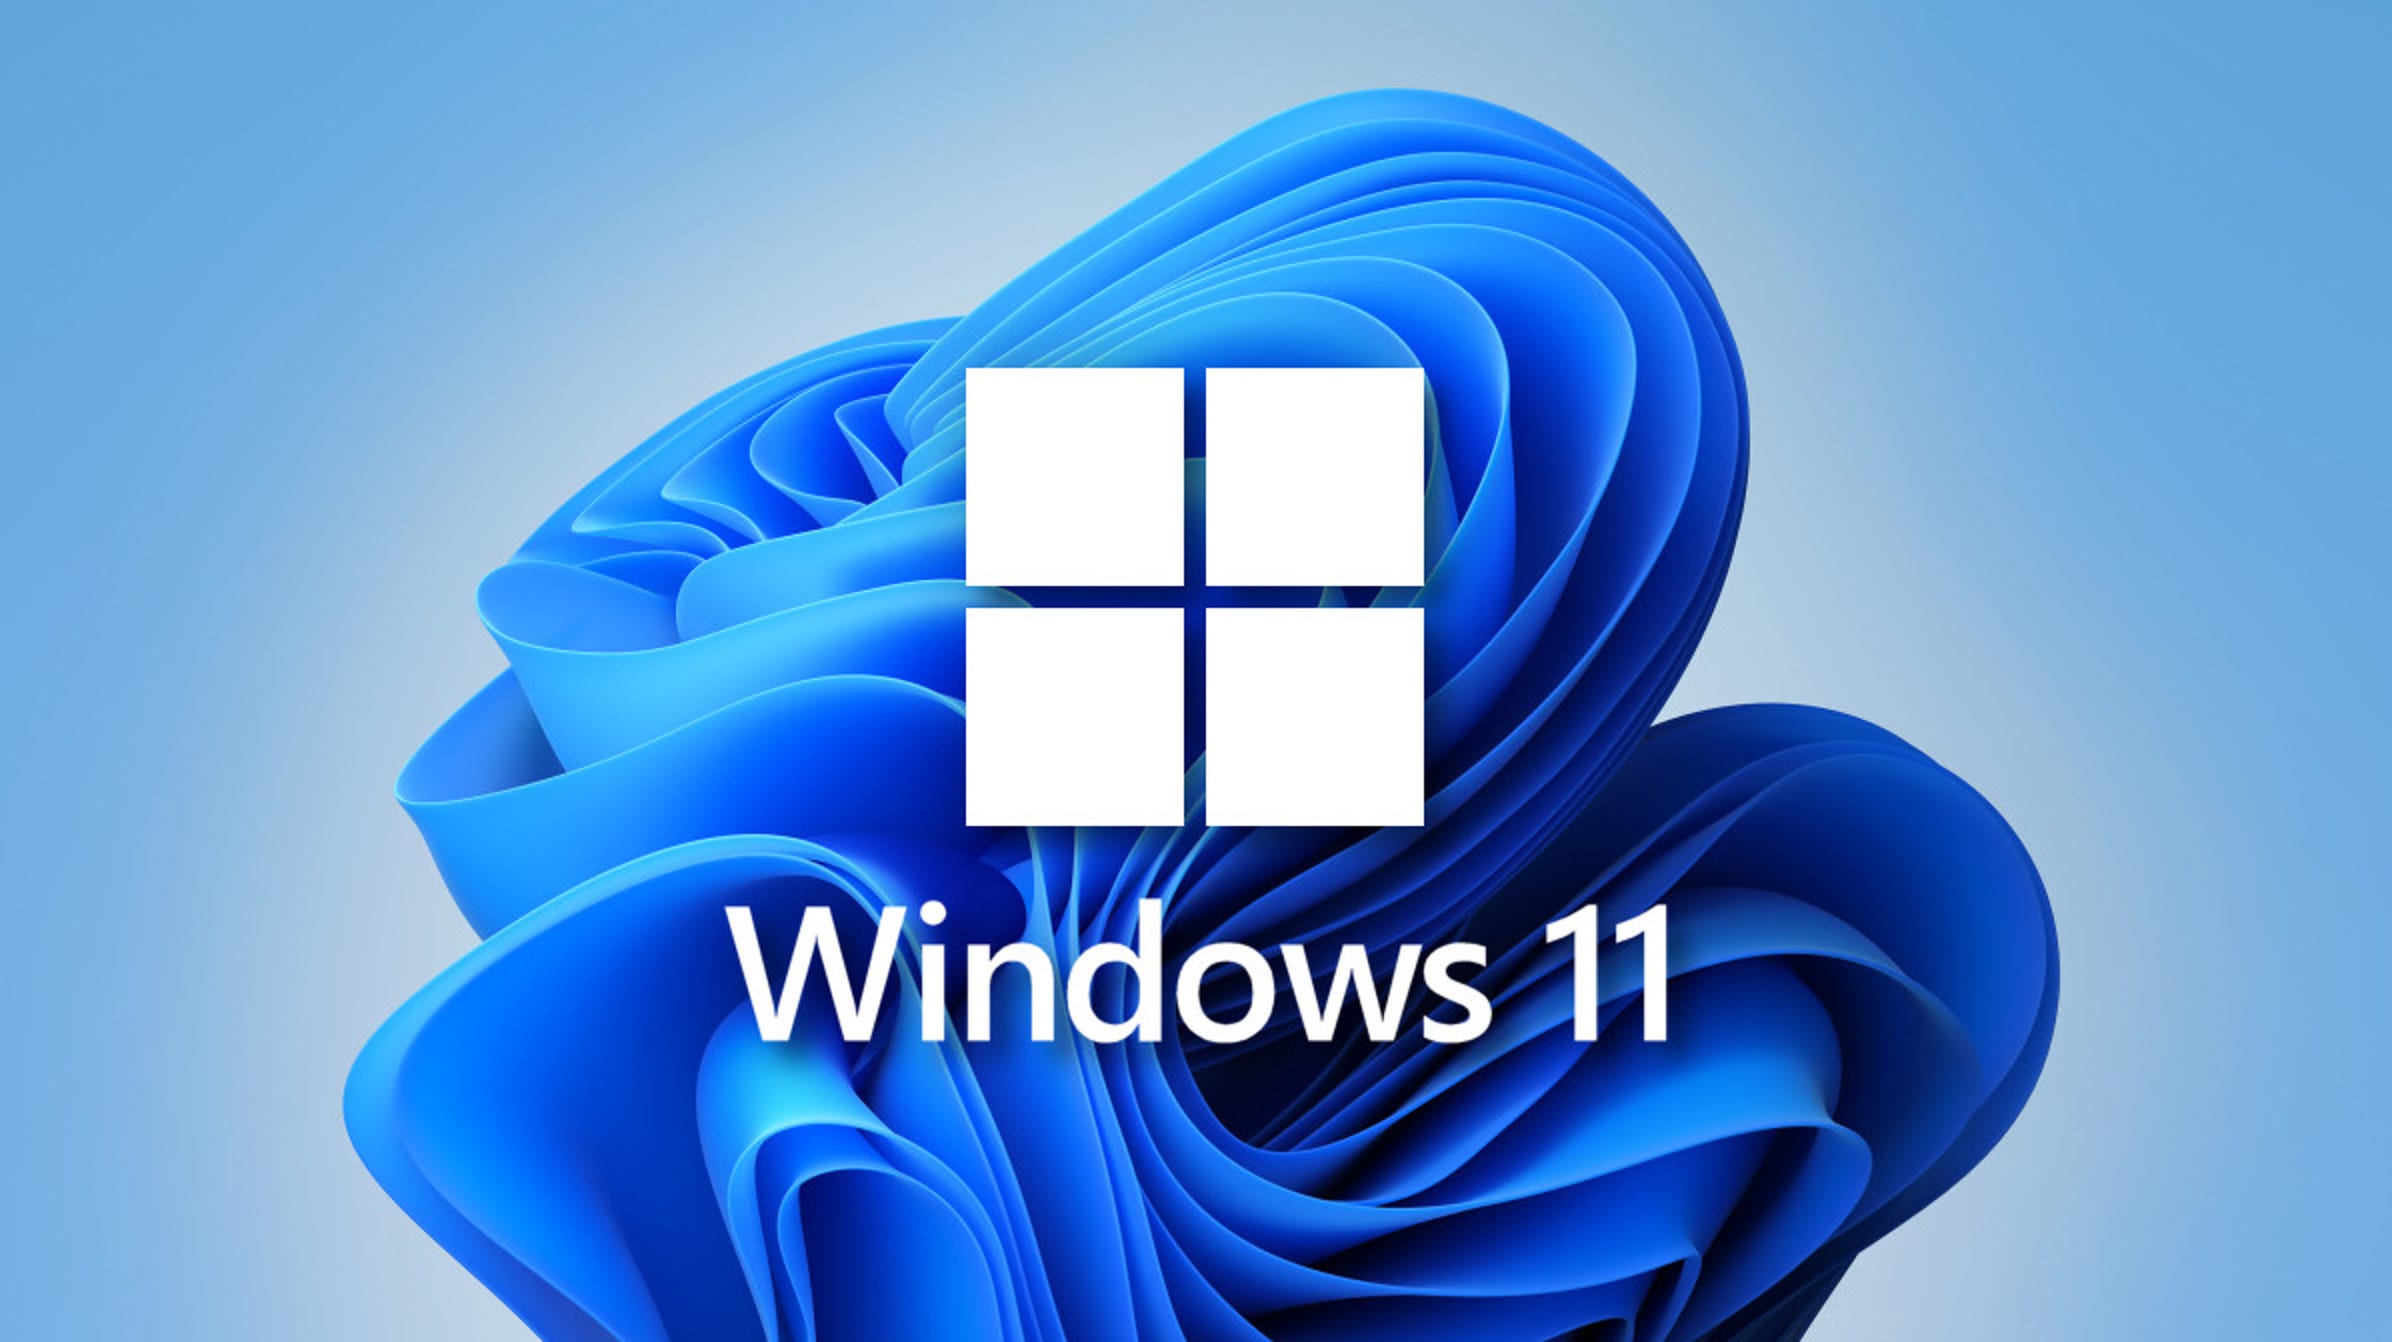 Новейшую версию Windows раздают совершенно бесплатно всем желающим